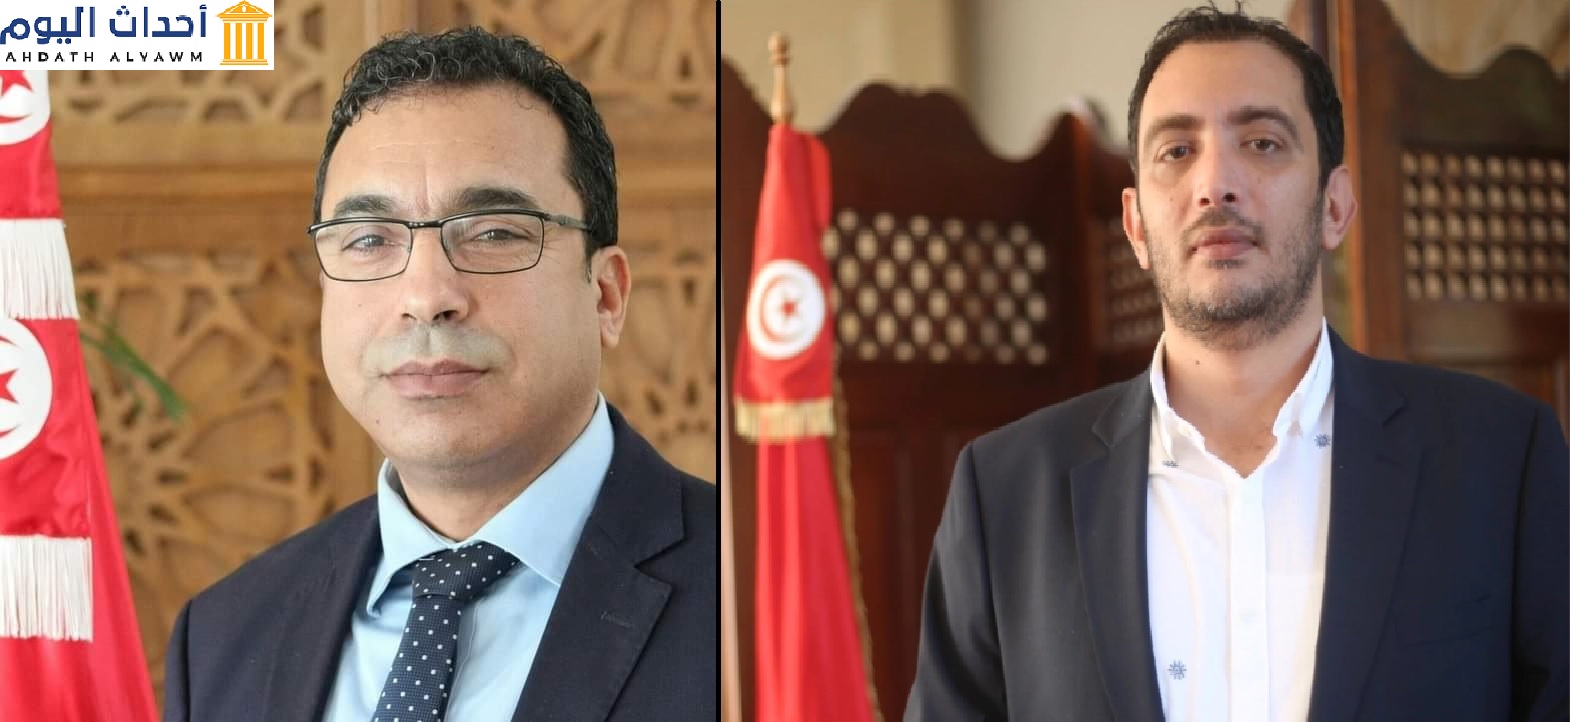 النائب في البرلمان التونسي، عن حركة أمل وعمل المستقلة، "ياسين العياري"، والنائب في مجلس نواب الشعب التونسي "ماهر زيد"